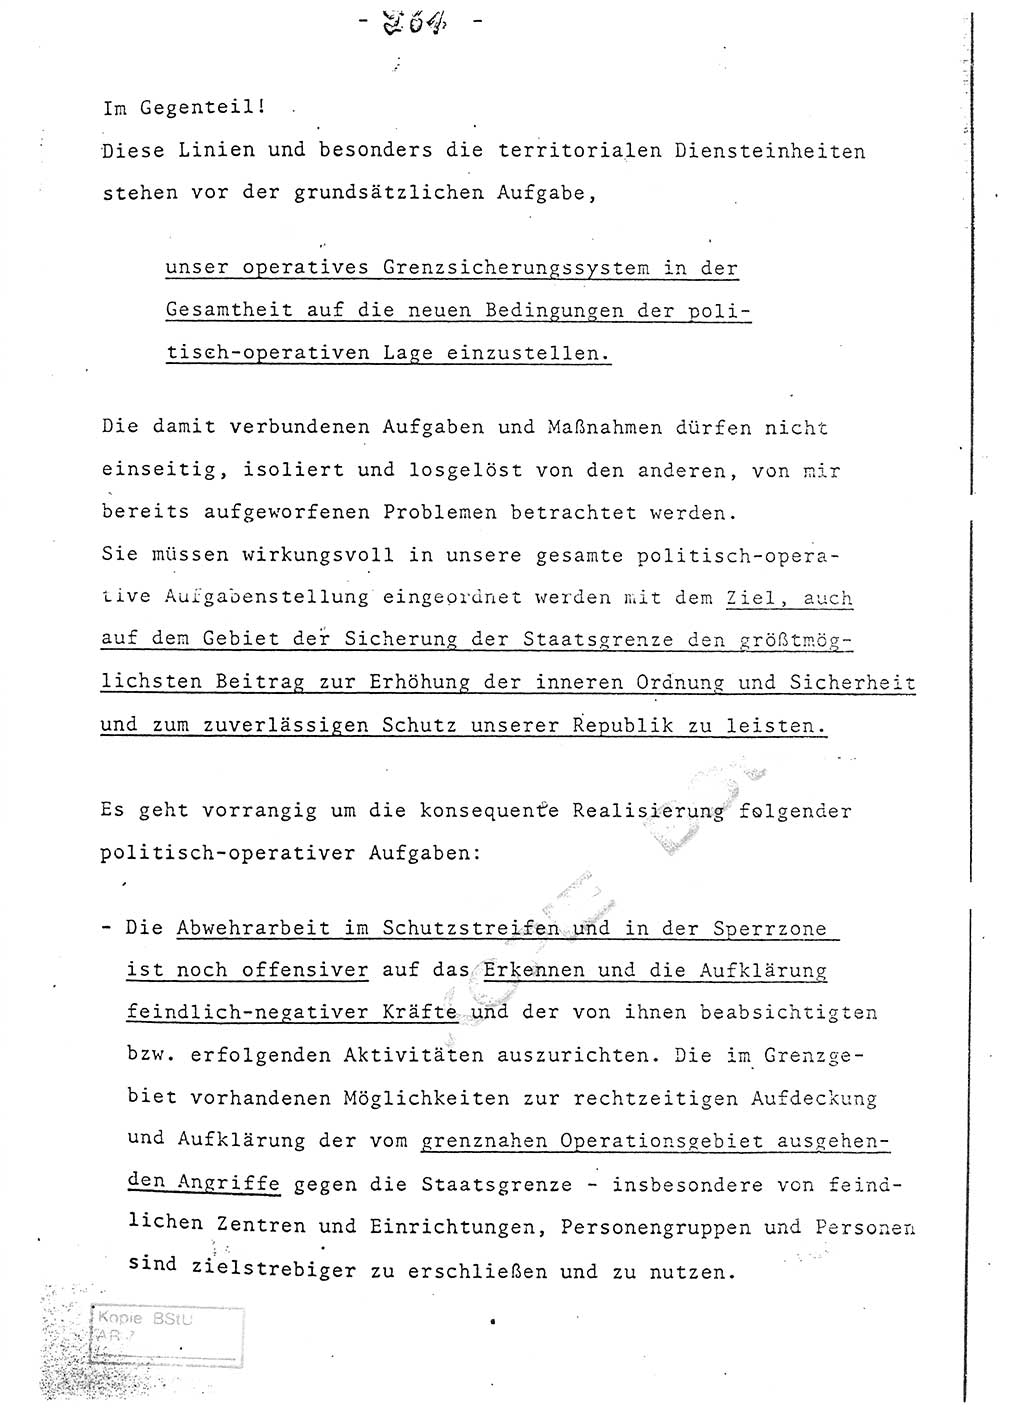 Referat (Entwurf) des Genossen Minister (Generaloberst Erich Mielke) auf der Dienstkonferenz 1972, Ministerium für Staatssicherheit (MfS) [Deutsche Demokratische Republik (DDR)], Der Minister, Geheime Verschlußsache (GVS) 008-150/72, Berlin 25.2.1972, Seite 261 (Ref. Entw. DK MfS DDR Min. GVS 008-150/72 1972, S. 261)